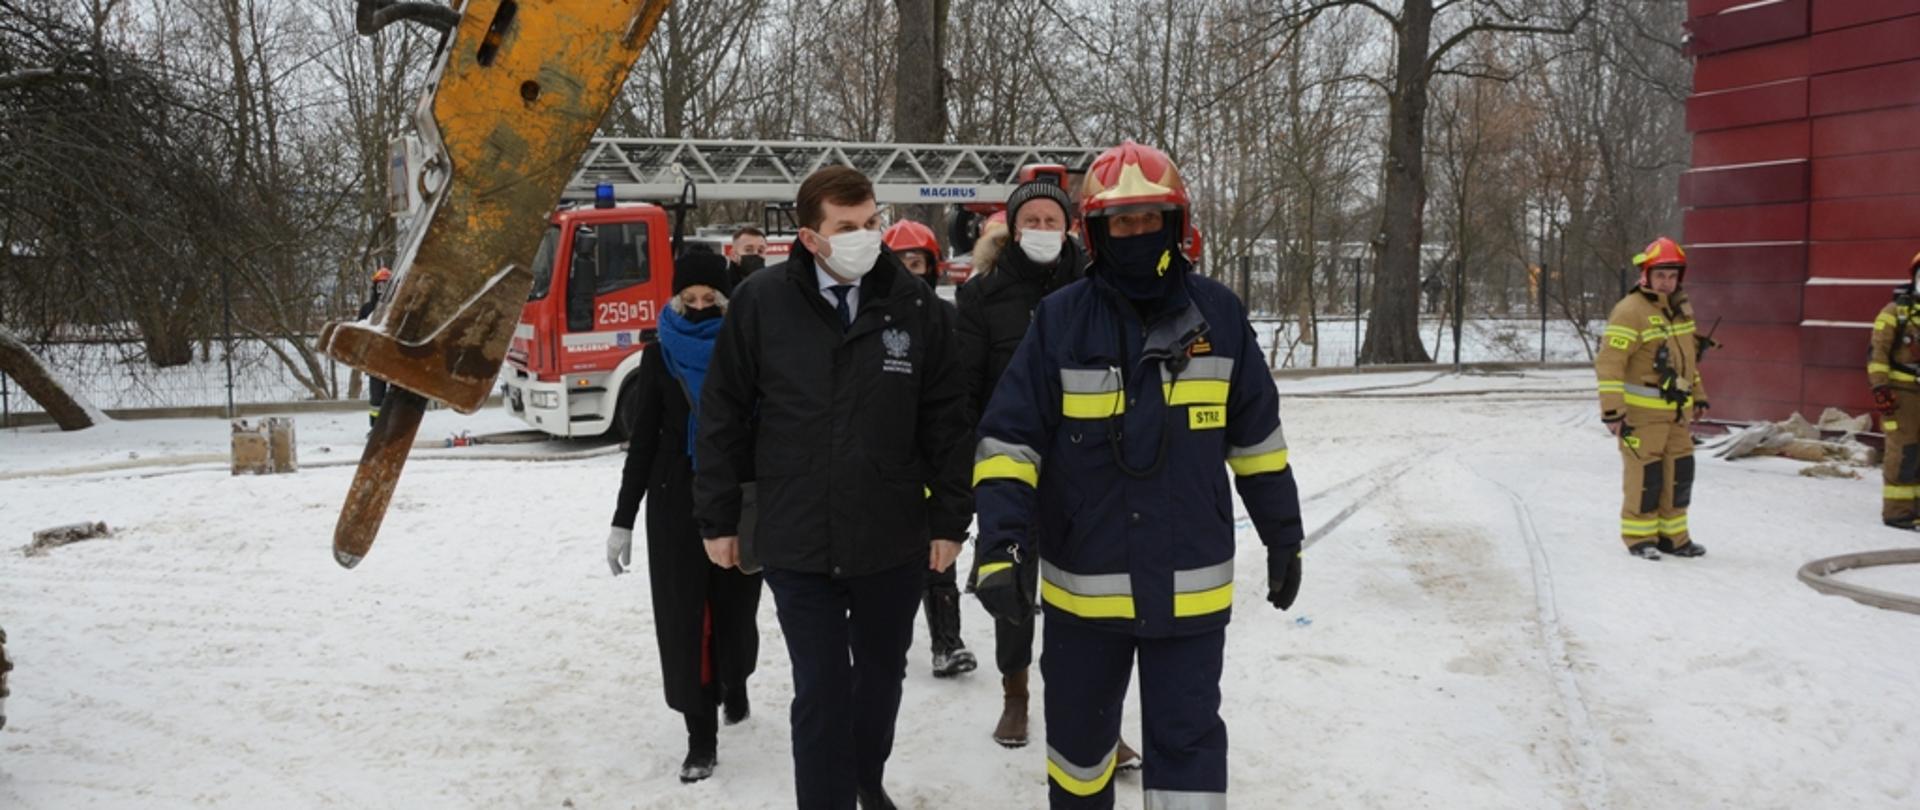 Wojewoda małopolski podąża obok Komendanta Wojewódzkiego PSP. Dookoła śnieg, w oddali strażacy i wóz strażacki.